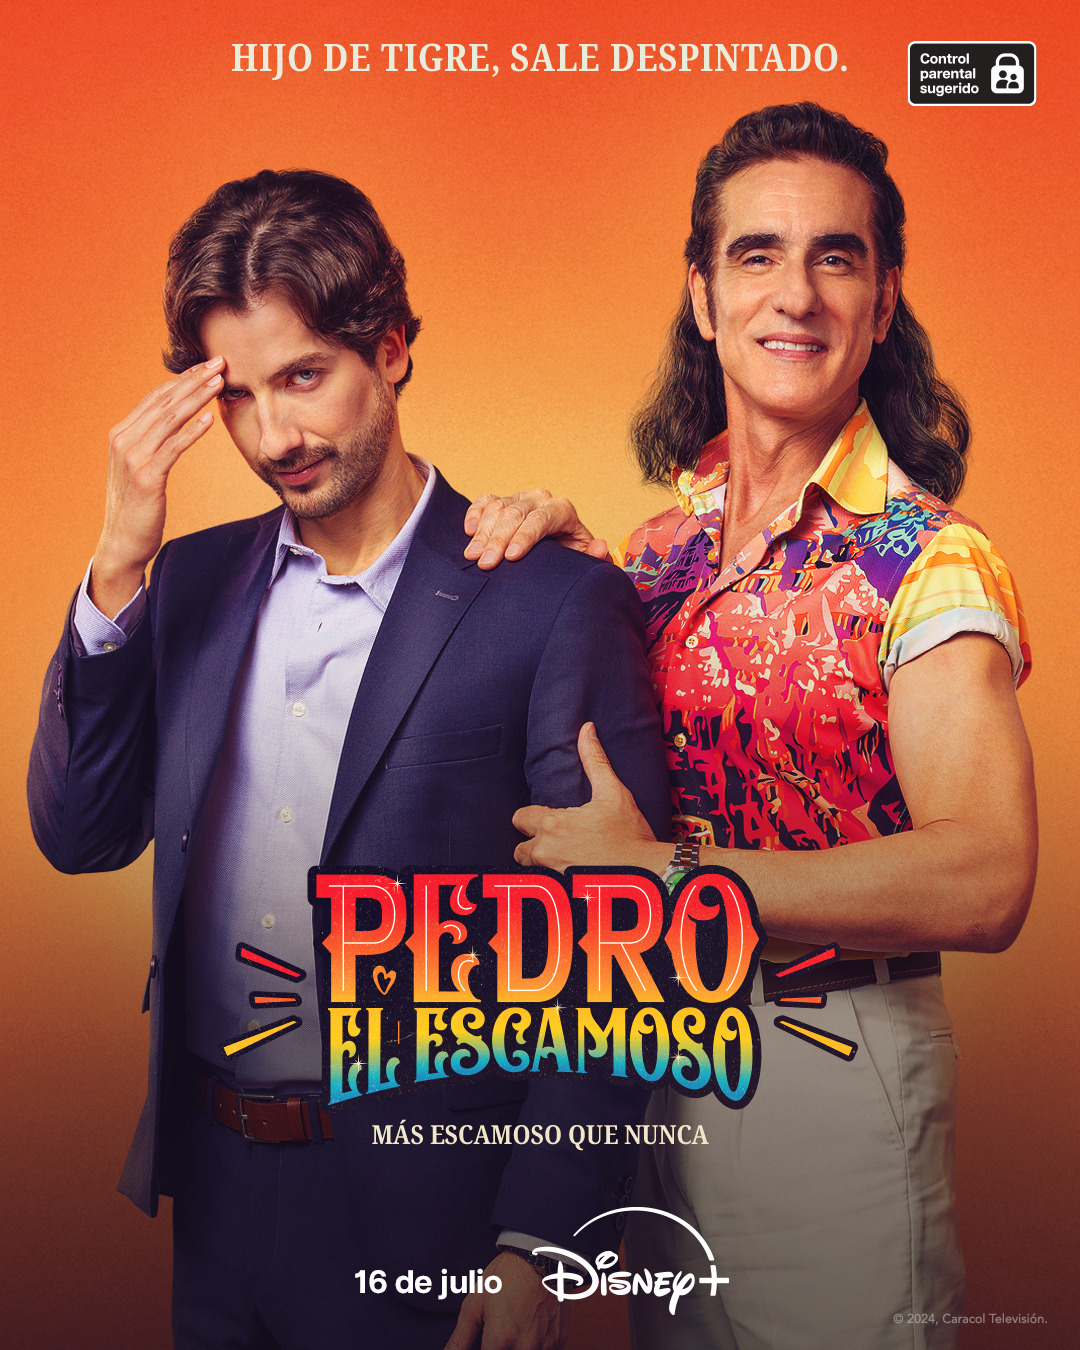 Extra Large TV Poster Image for Pedro el escamoso: más escamoso que nunca 